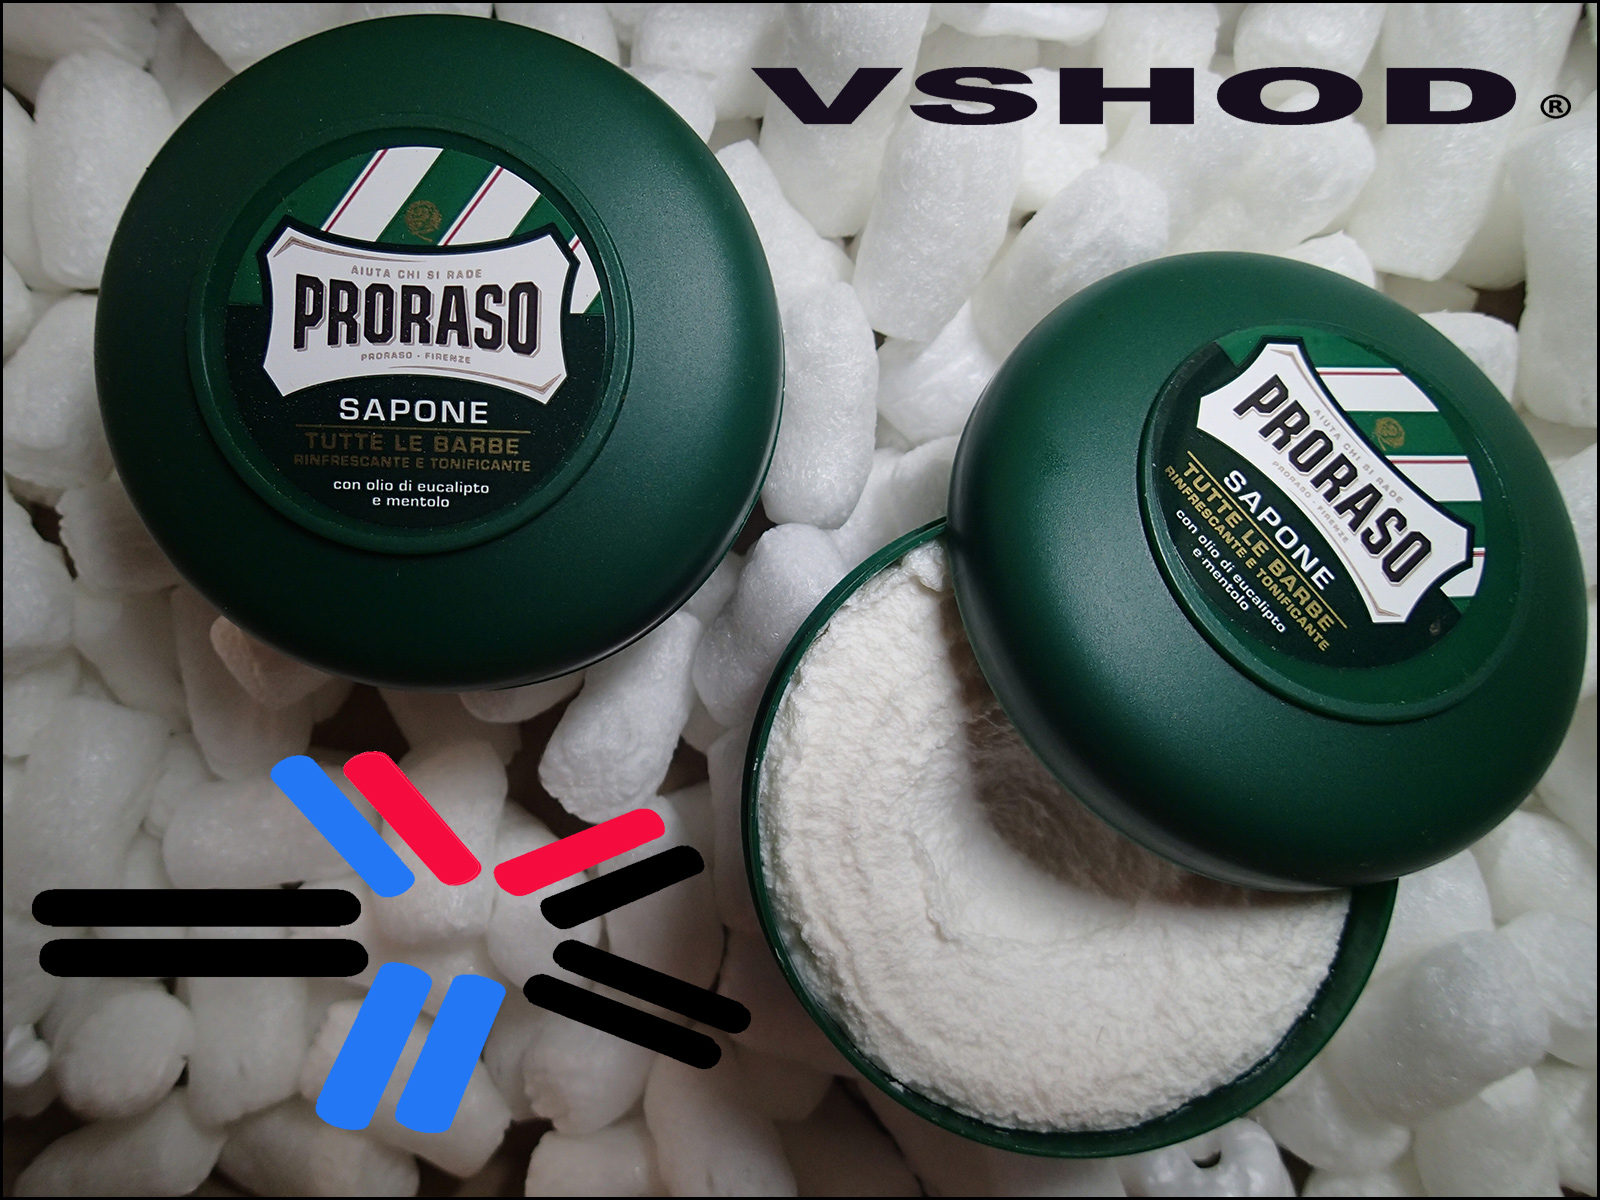 PRORASO Shaving Soap Australia